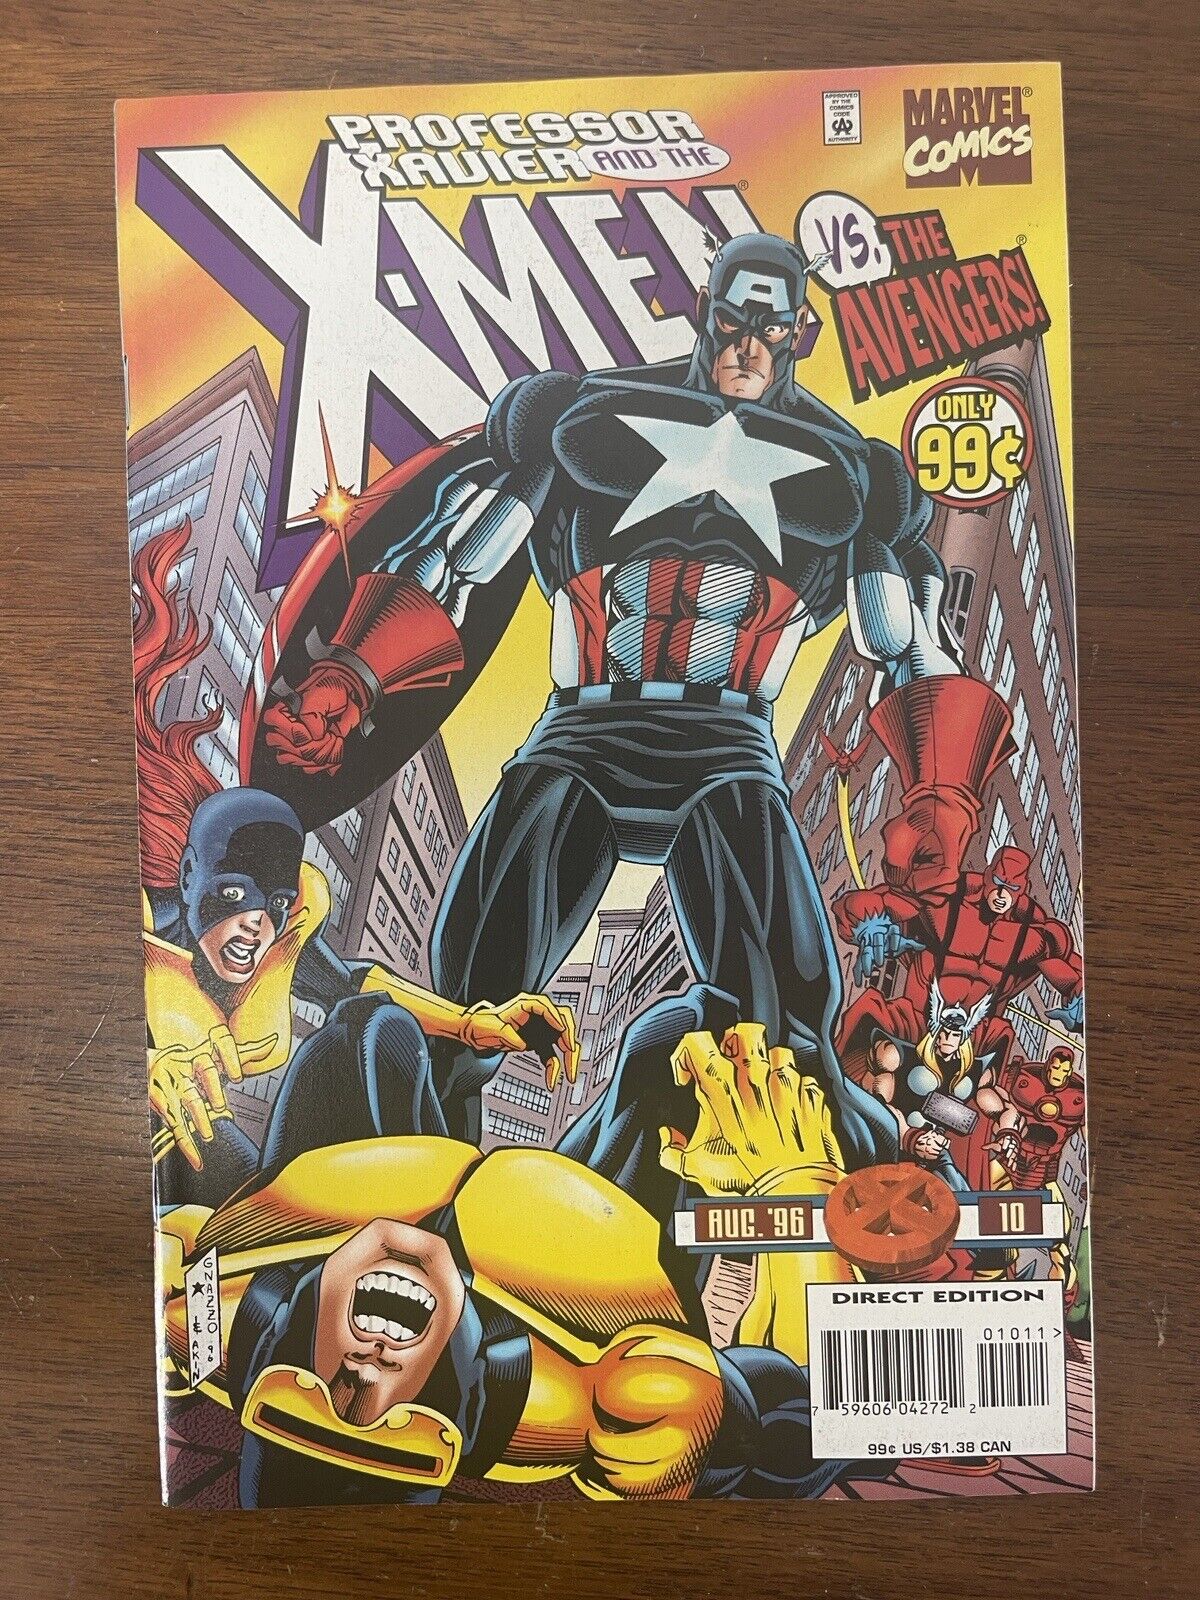 Professor Xavier and the X-Men Vs The Avengers #10 Marvel Comics Aug 1996